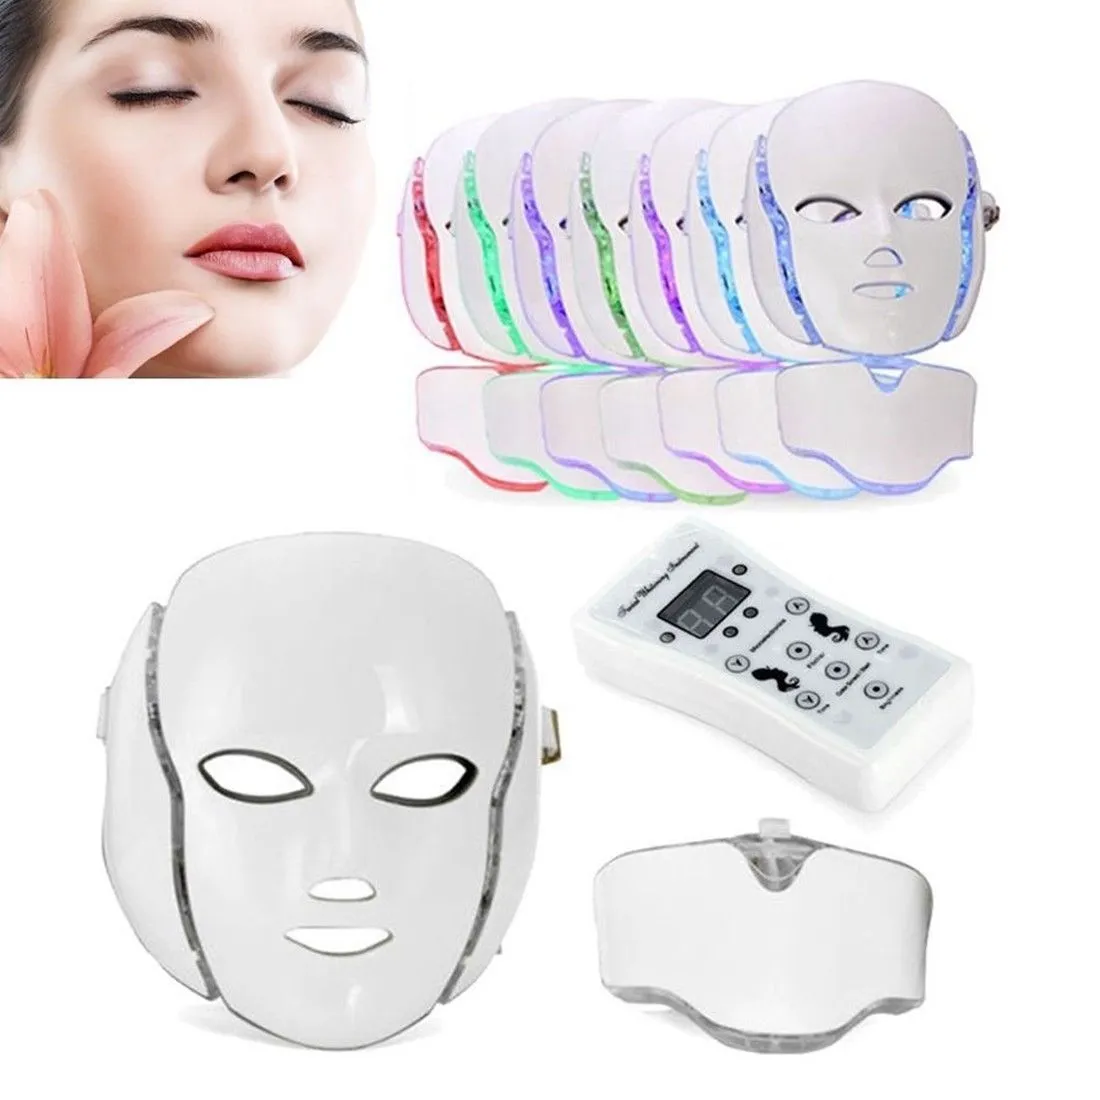 PDT 7 DIODO EMISSOR de Luz Terapia Máscara Facial Beauty LED Máscara de Pescoço Facial Com Microcorrente para o Clareamento Da Pele Dispositivo